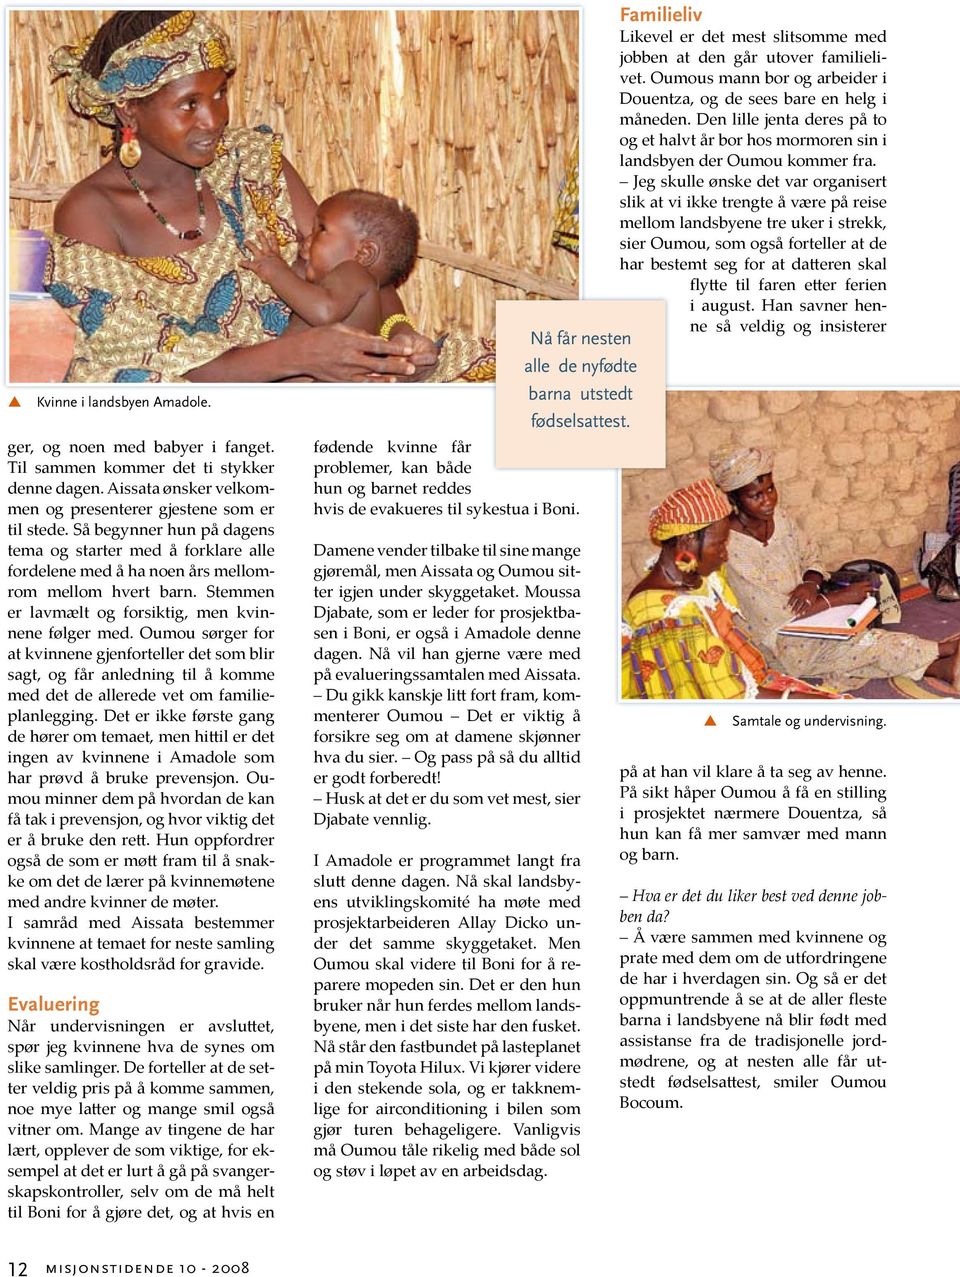 Oumou sørger for at kvinnene gjenforteller det som blir sagt, og får anledning til å komme med det de allerede vet om familieplanlegging.